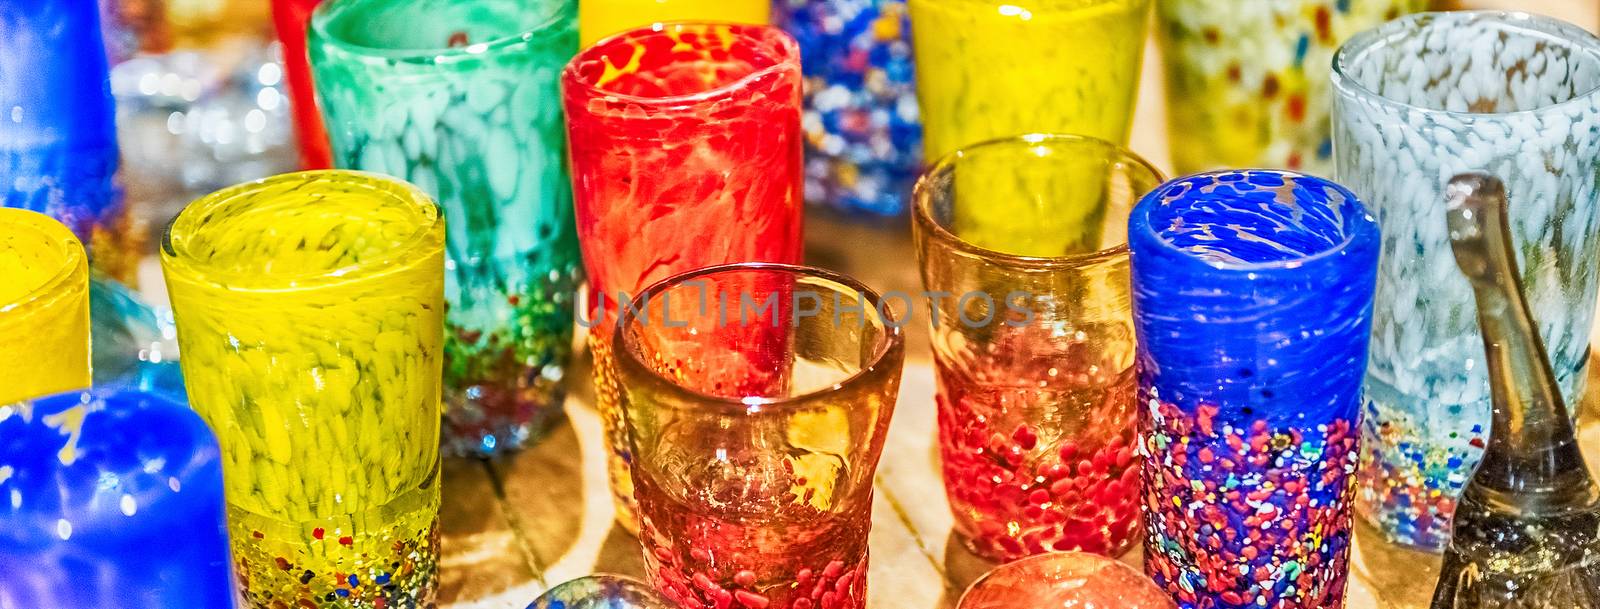 Traditional colorful murano glass goblets  for sale, Murano, Ven by marcorubino